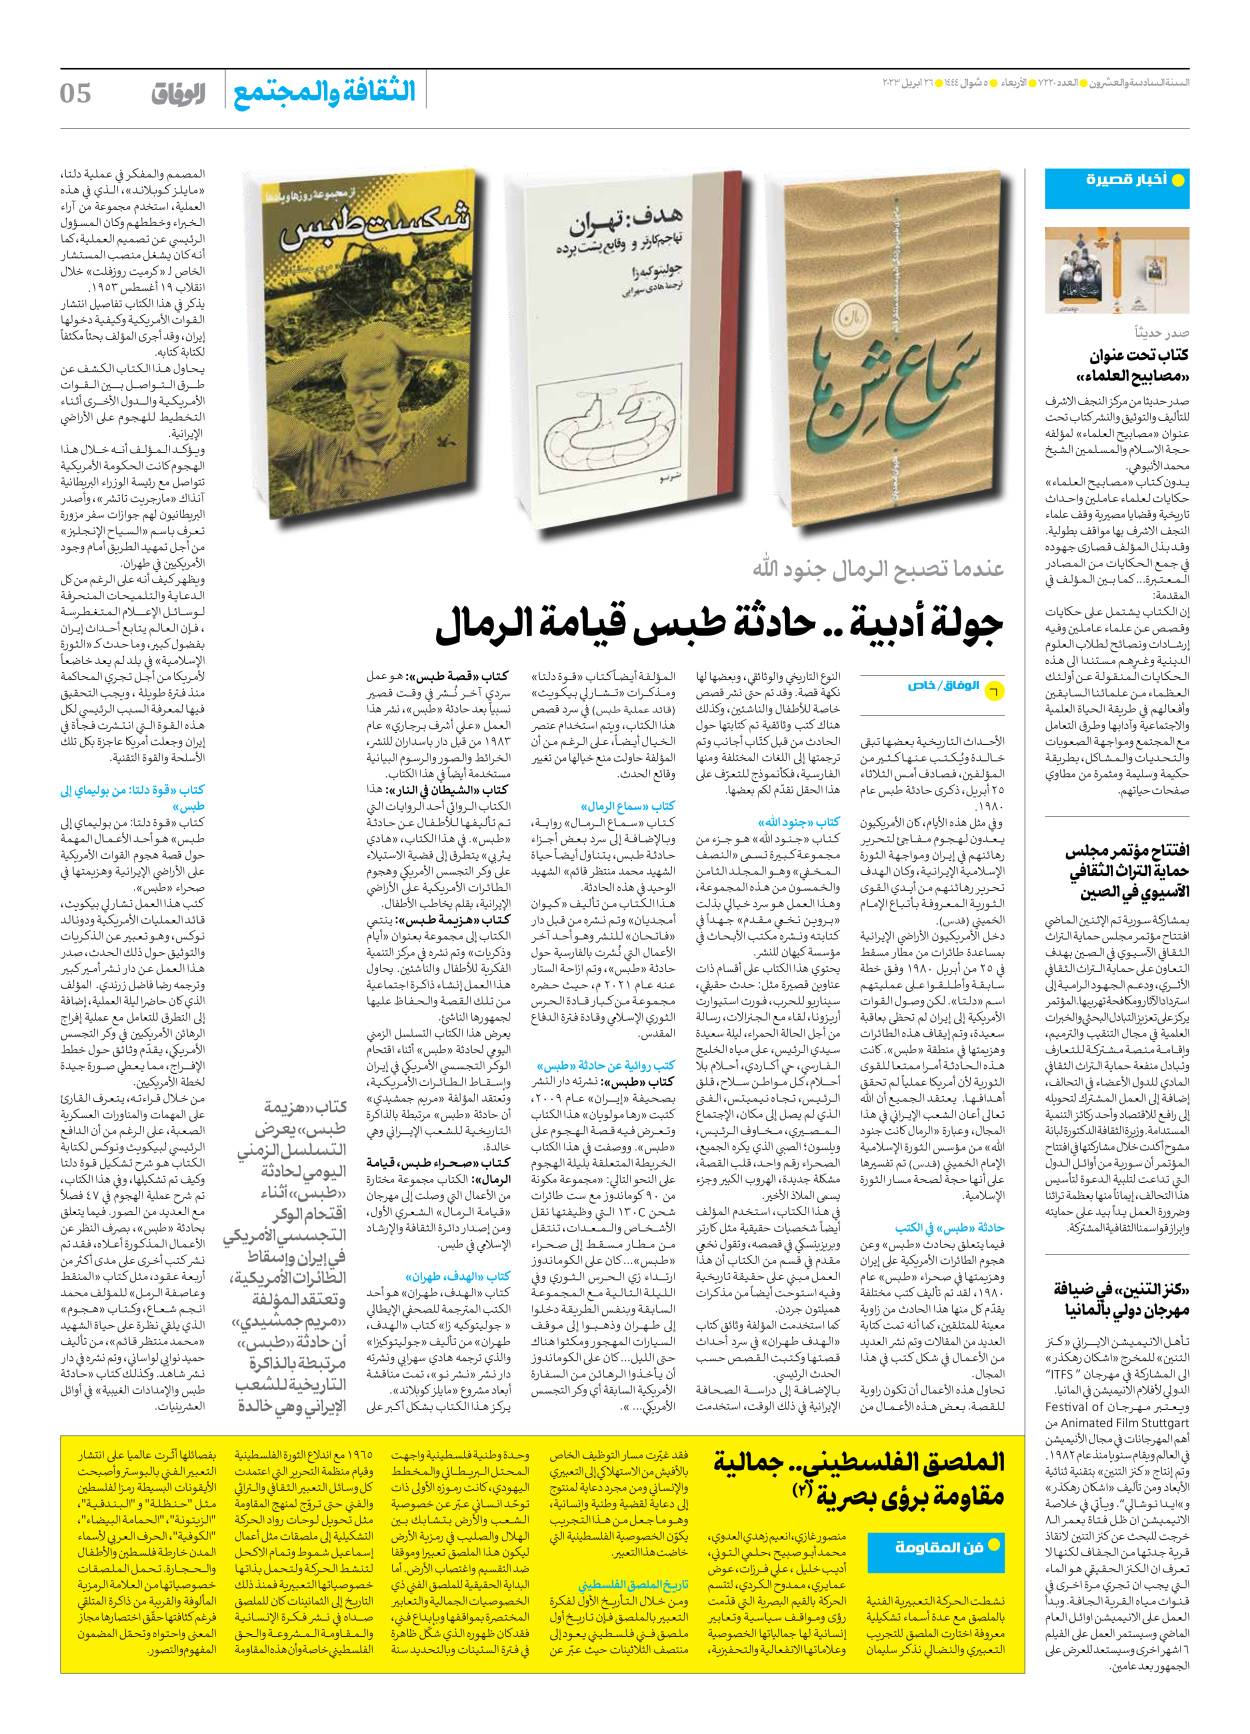 صحیفة ایران الدولیة الوفاق - العدد سبعة آلاف ومائتان وعشرون - ٢٦ أبريل ٢٠٢٣ - الصفحة ٥